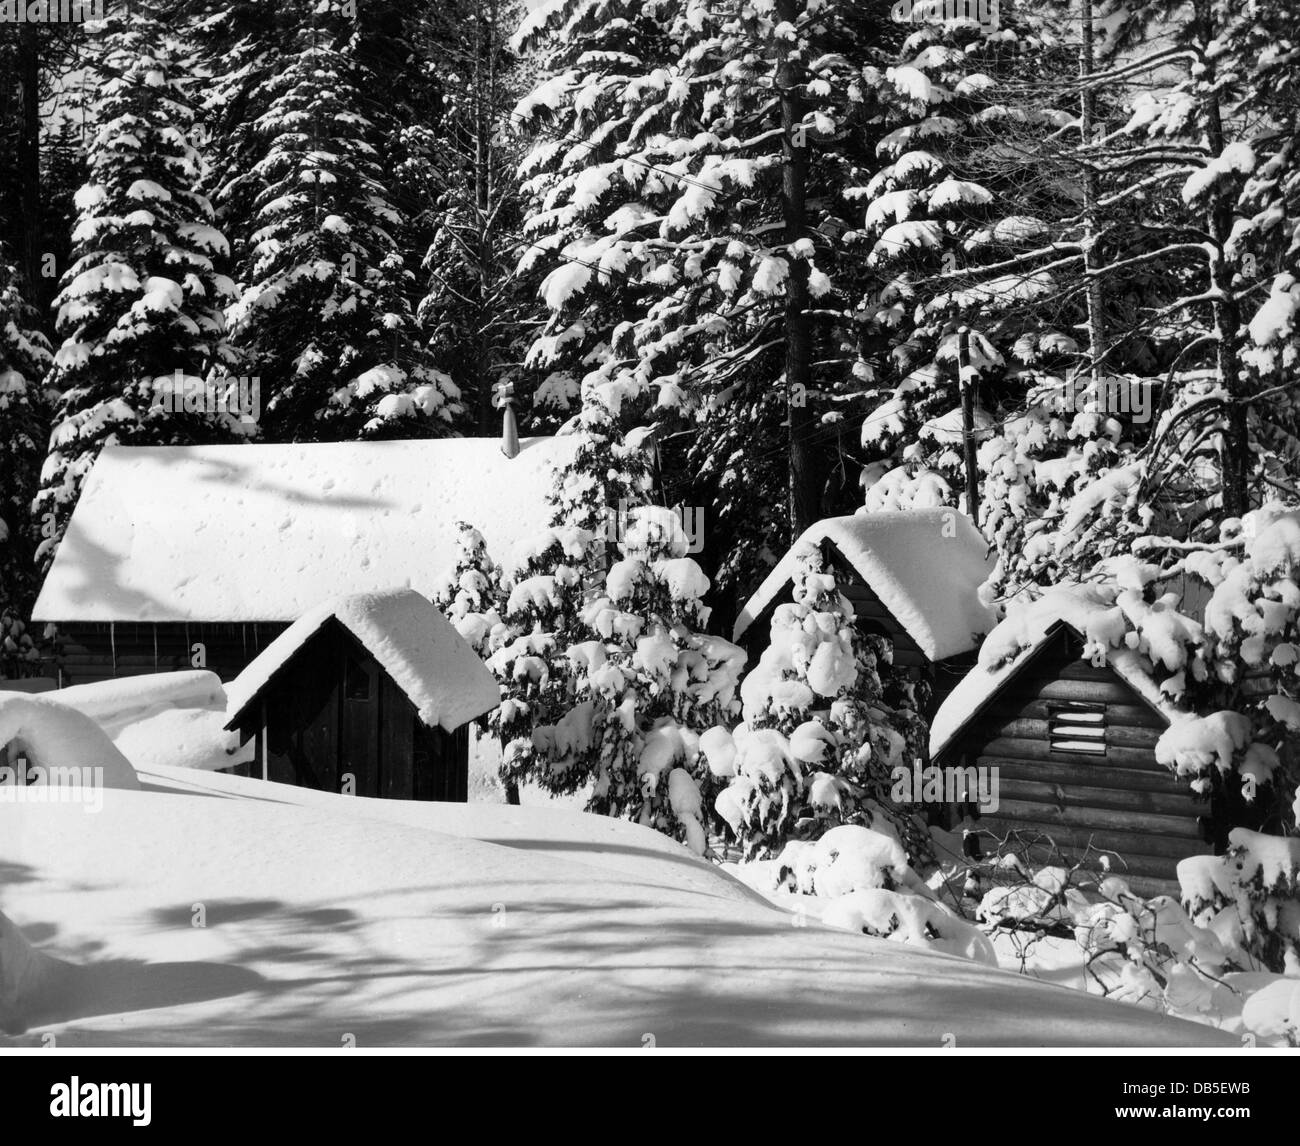 Jahreszeiten, Winter, schneebedeckte Blockhütten und verschneite Bäume, ca. 1960er Jahre, zusätzliche-Rechte-Clearences-nicht verfügbar Stockfoto